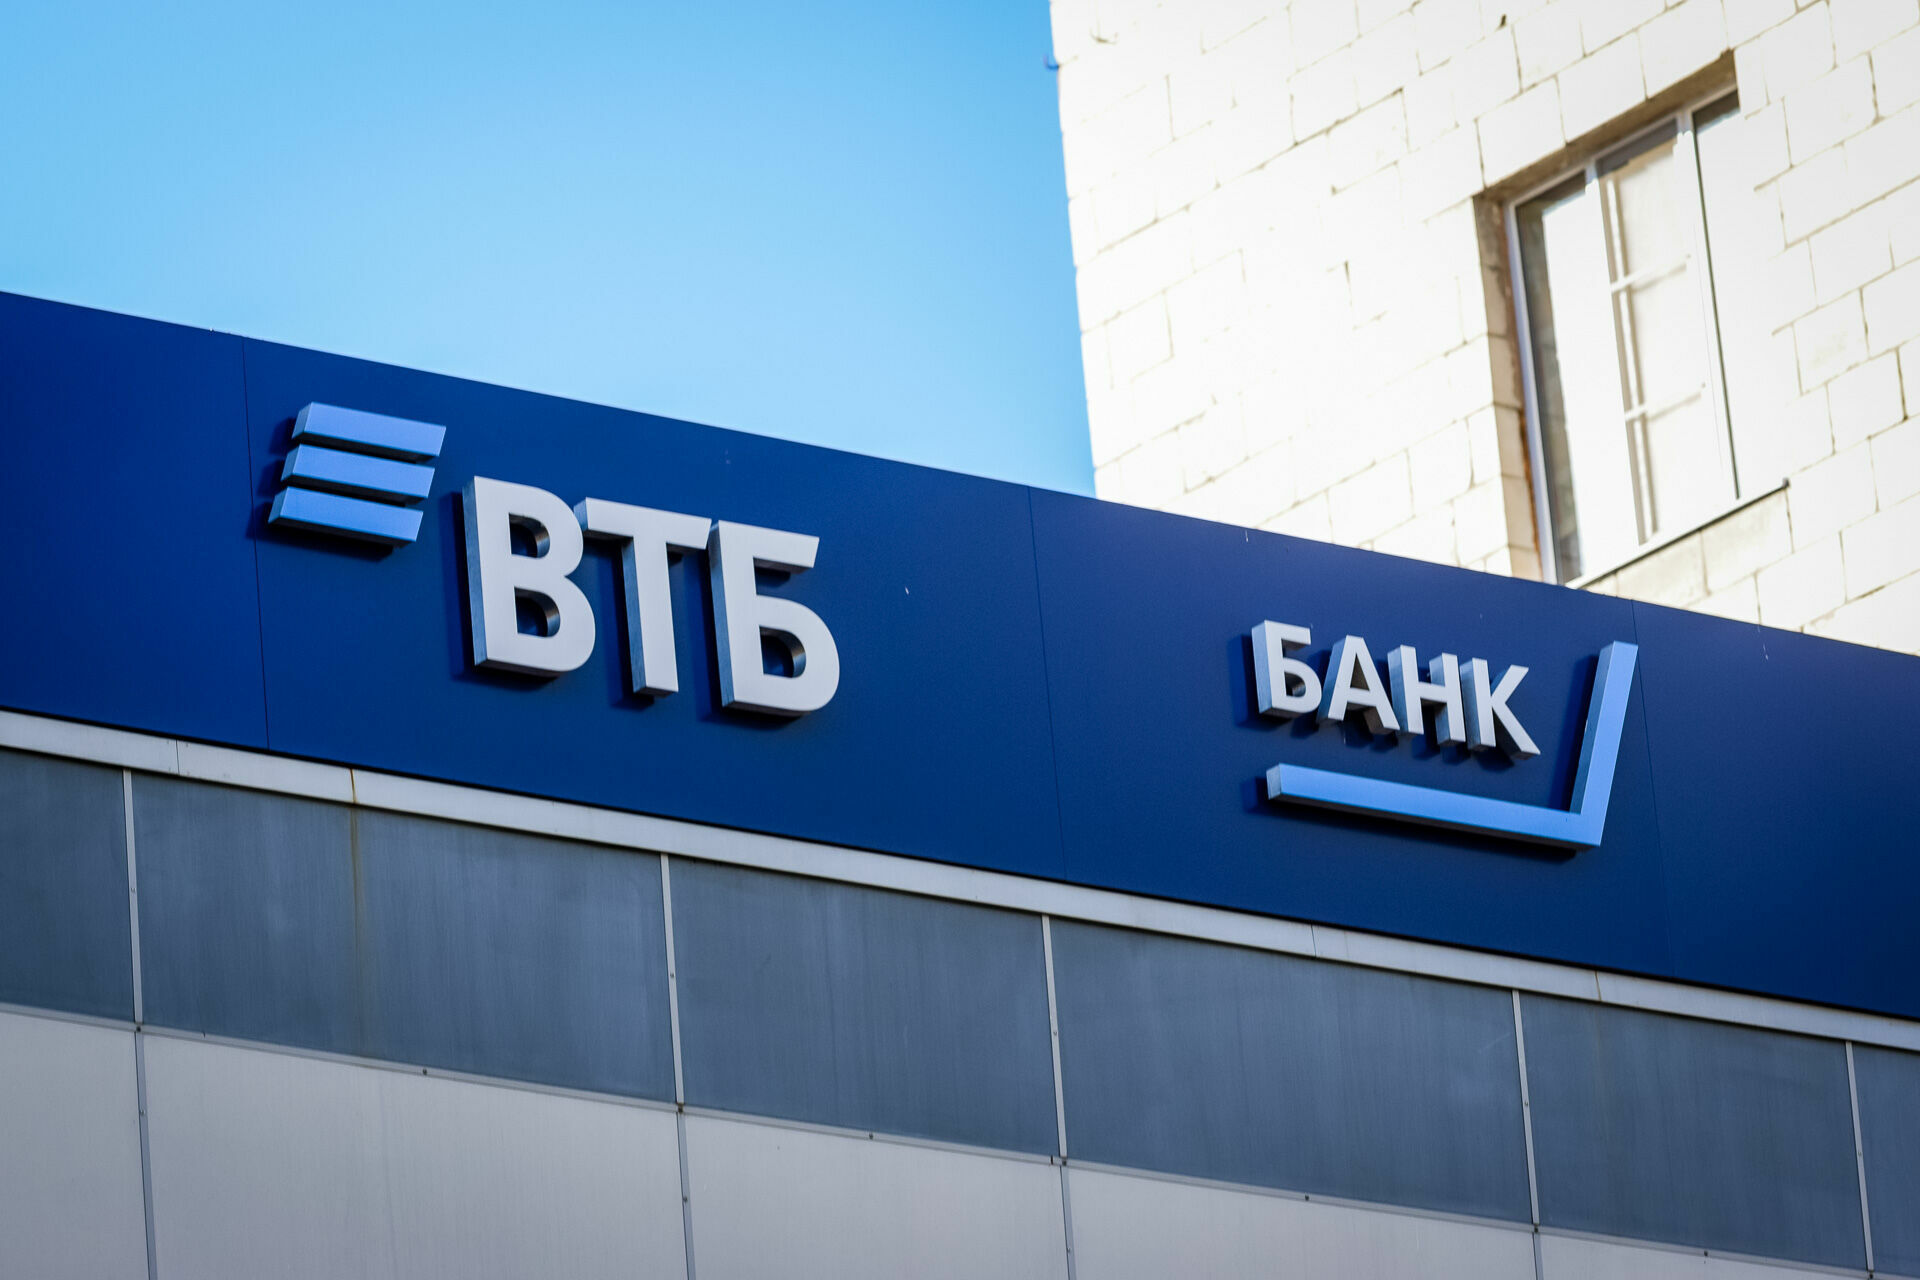 ВТБ снижает комиссию за переводы по России